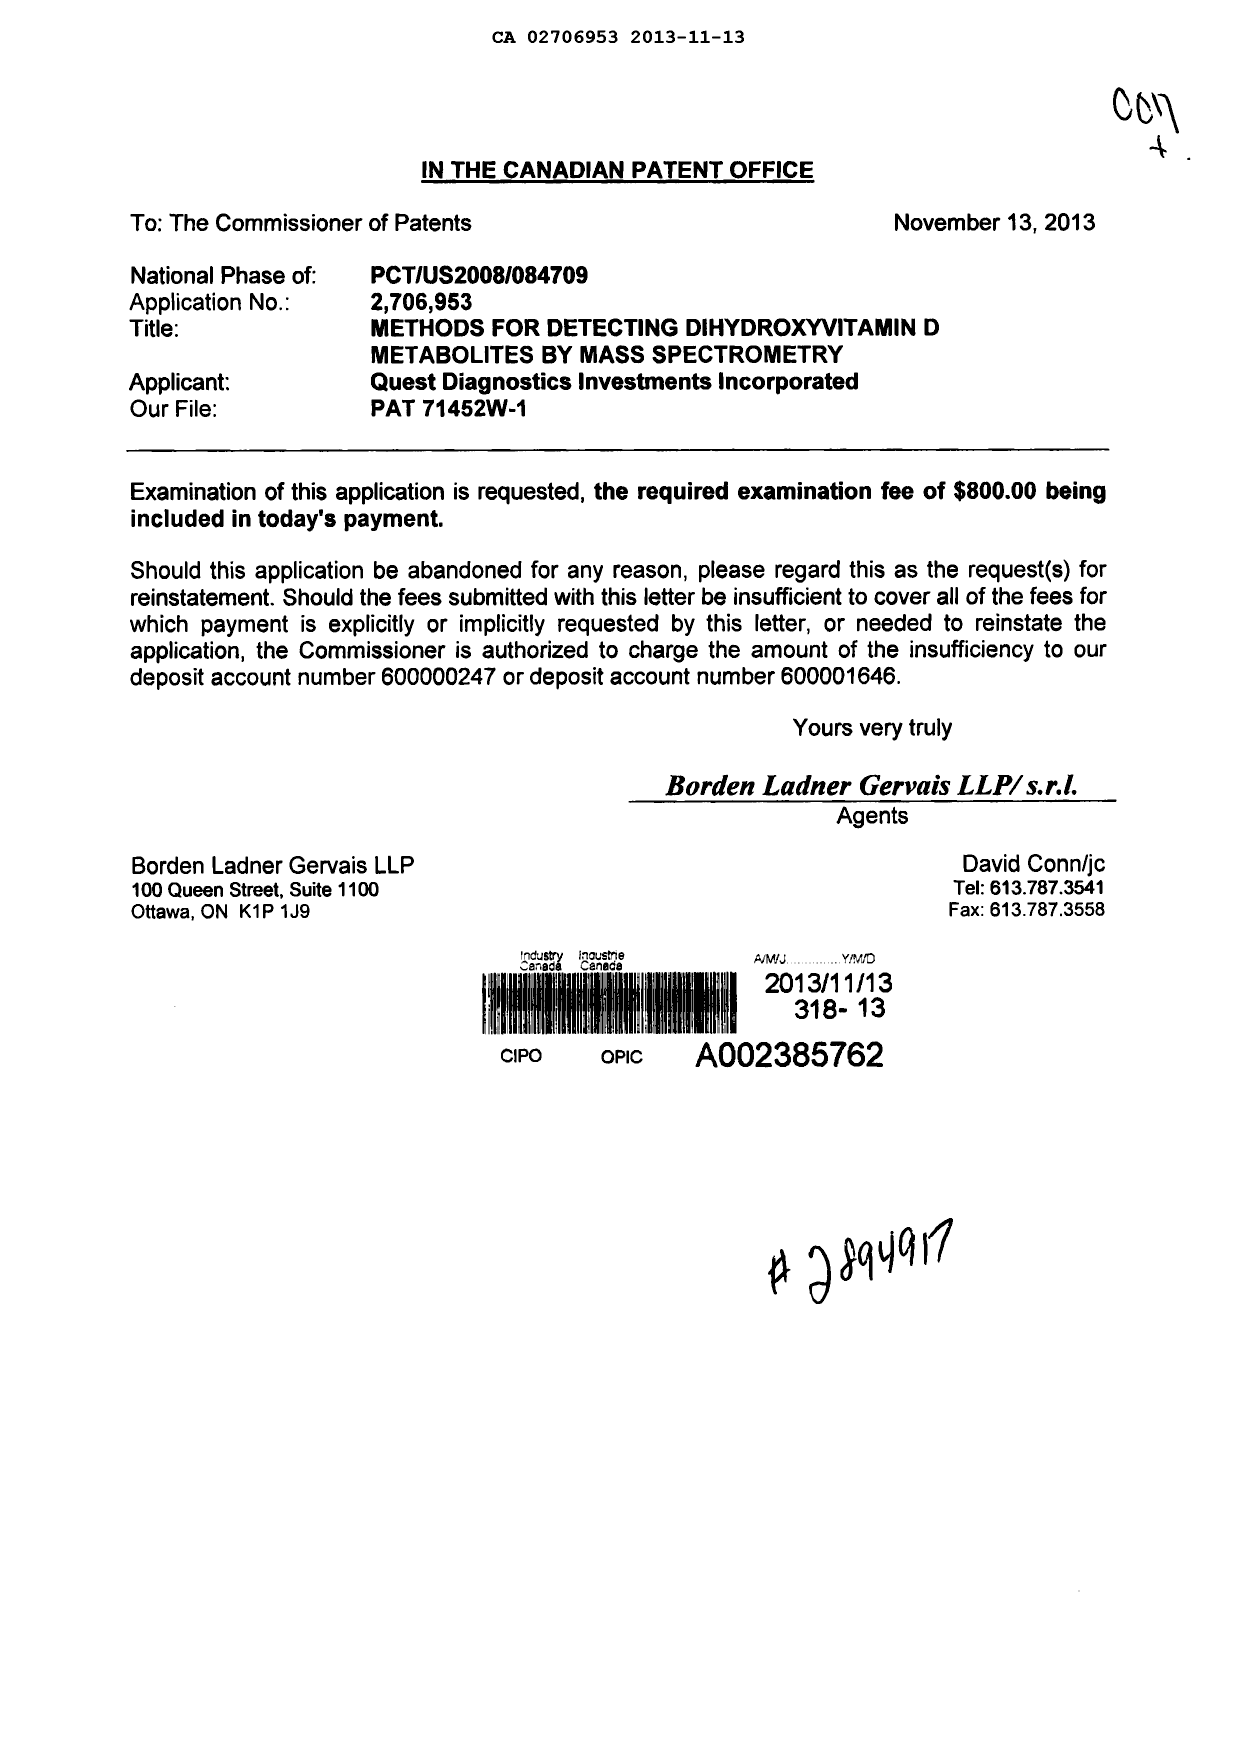 Document de brevet canadien 2706953. Poursuite-Amendment 20121213. Image 1 de 1